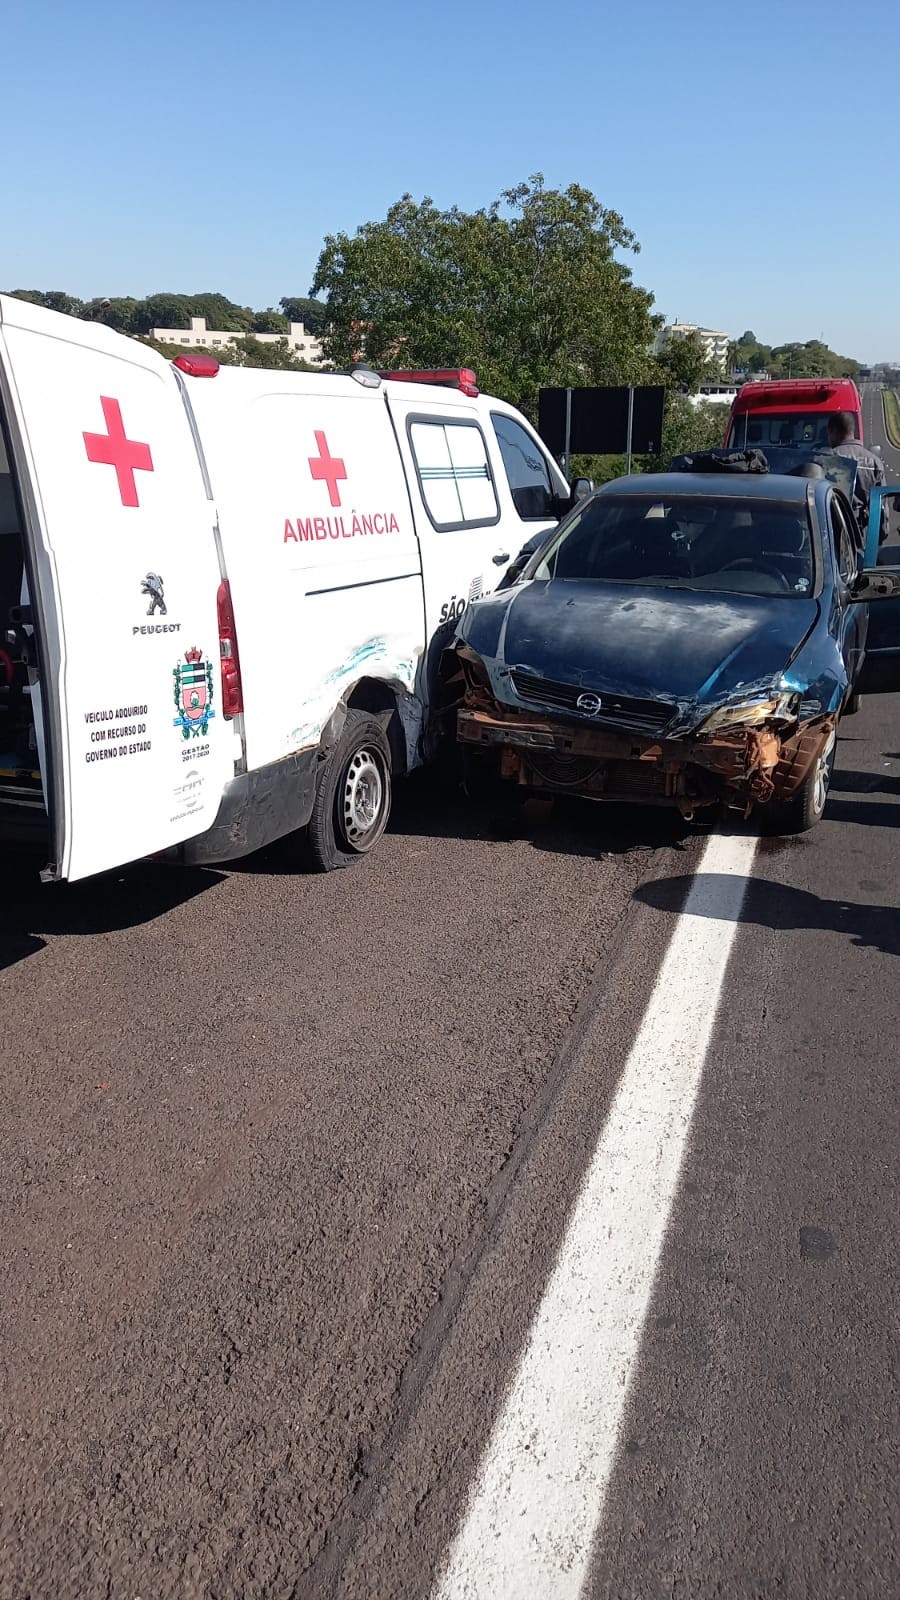 Durante fuga, homem bate carro lotado de maconha em ambulância que transportava mulher em trabalho de parto